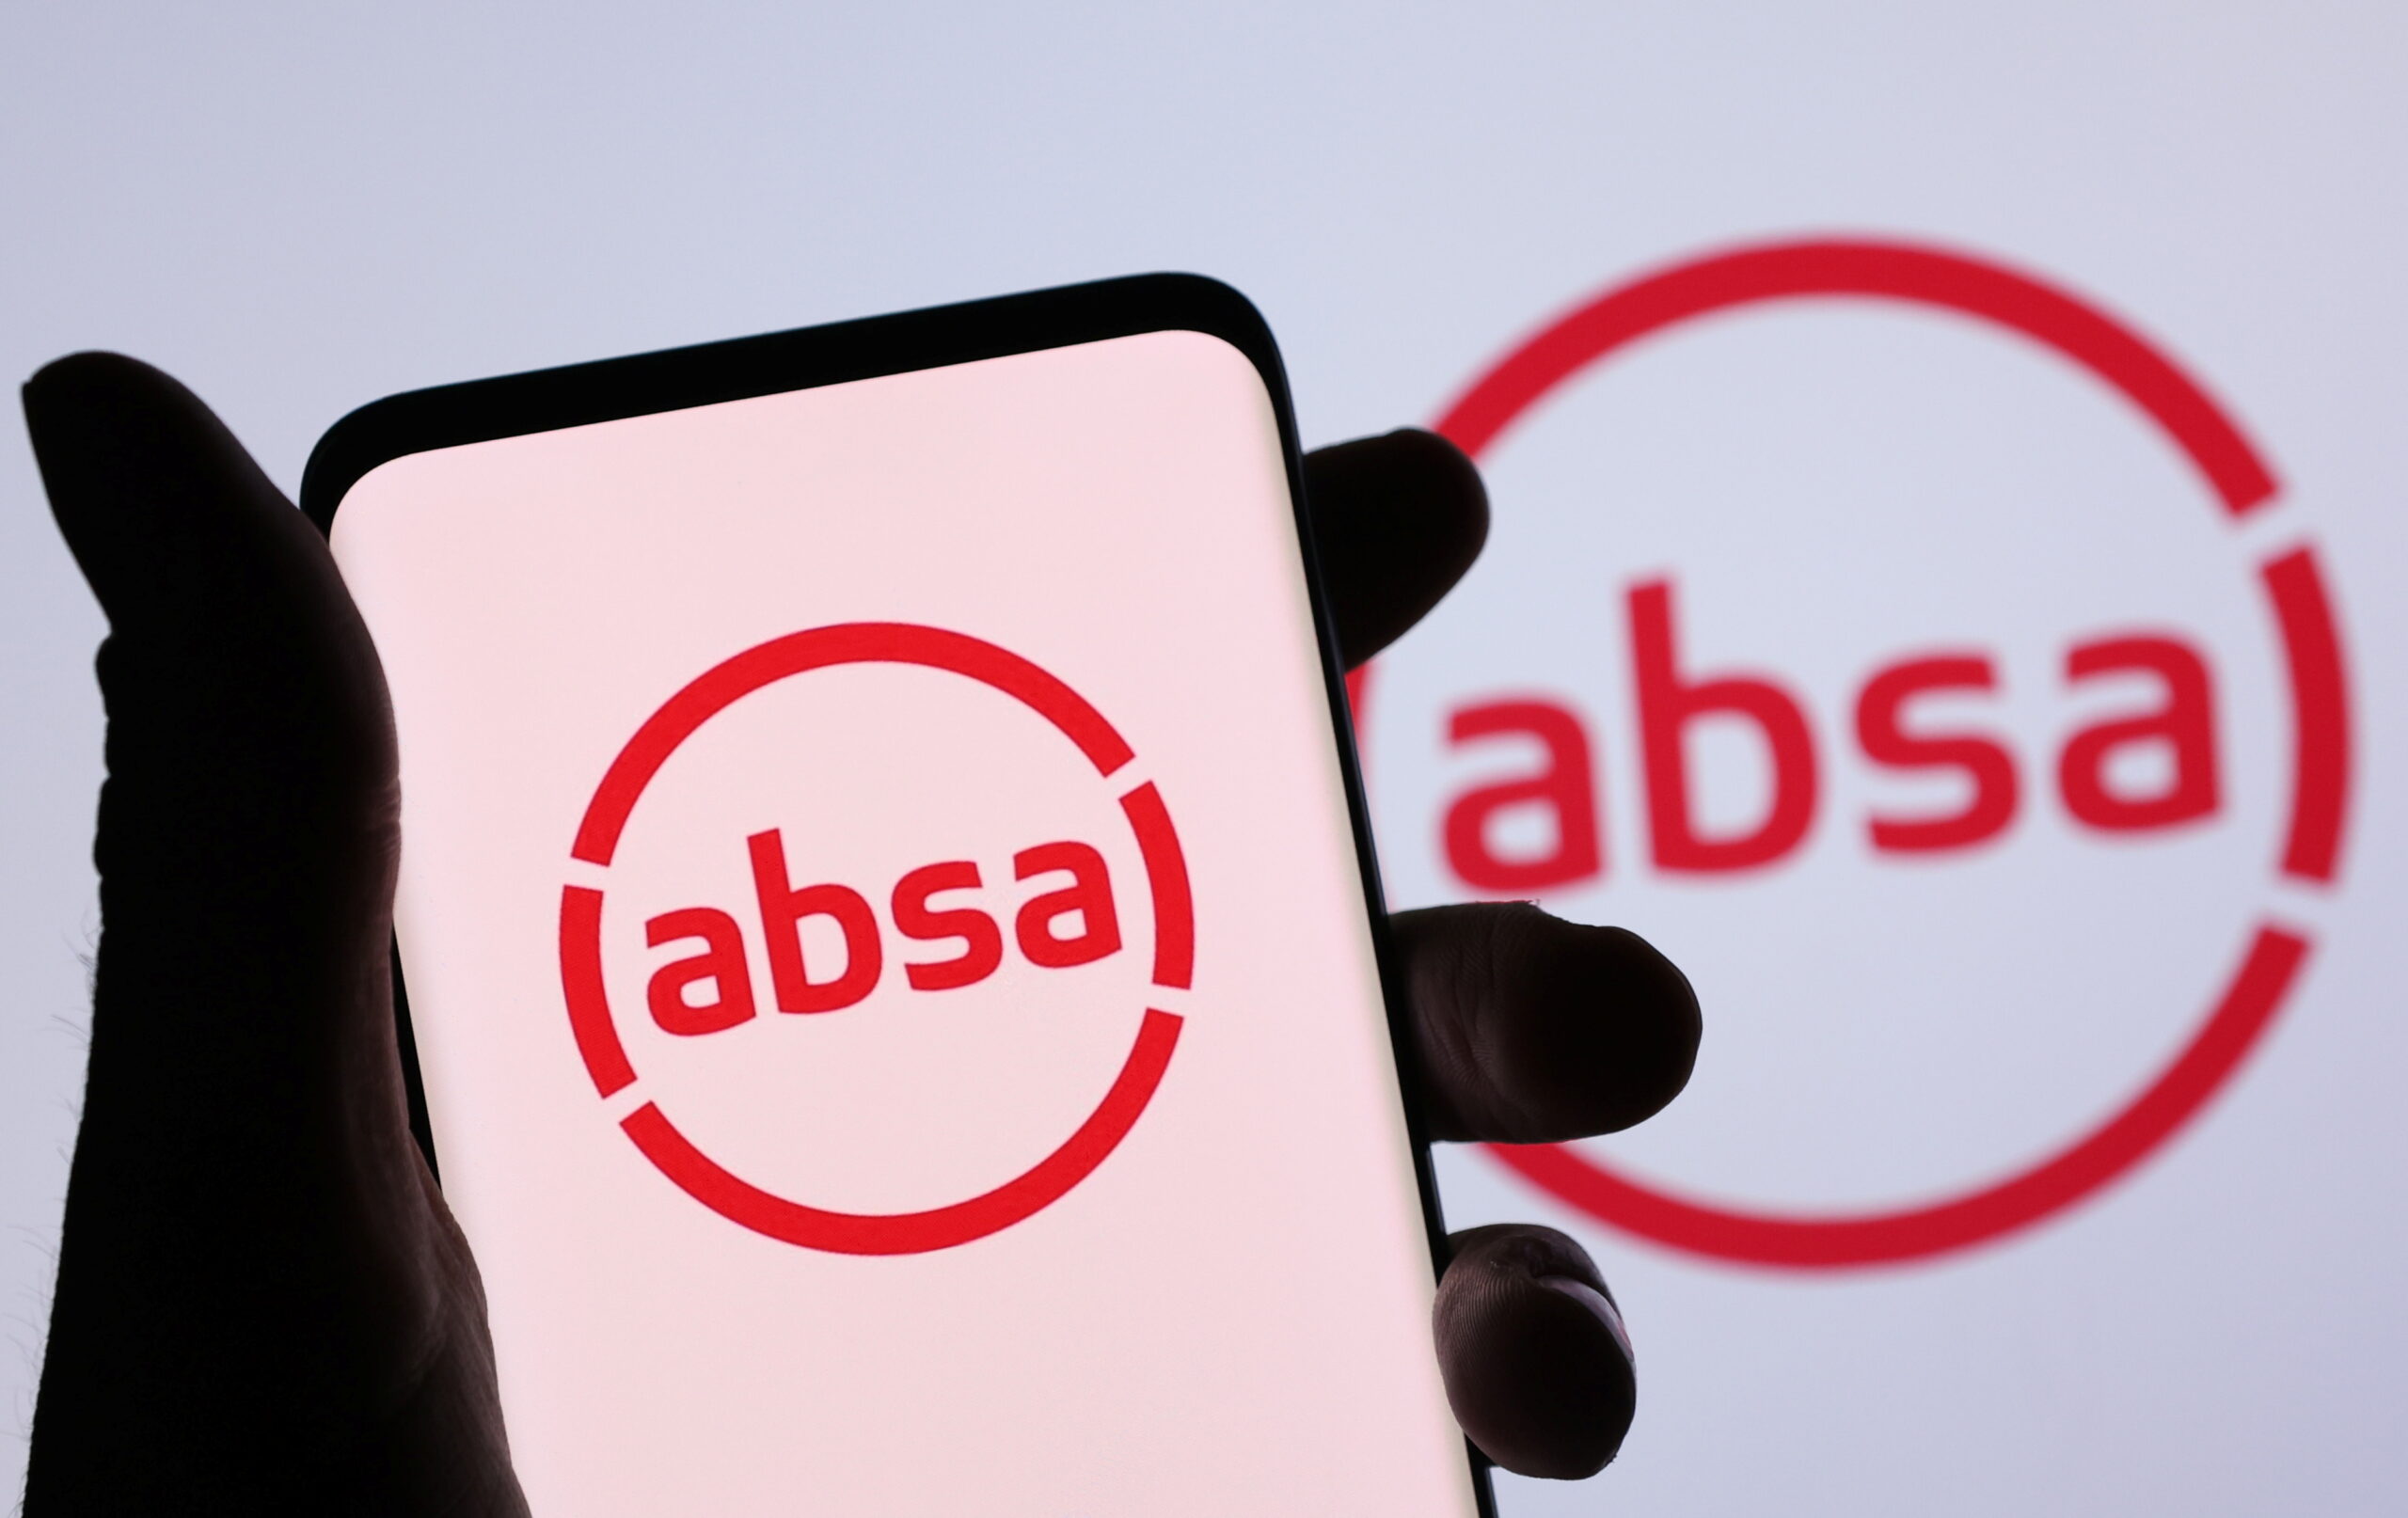 Absa Life Insurance Company